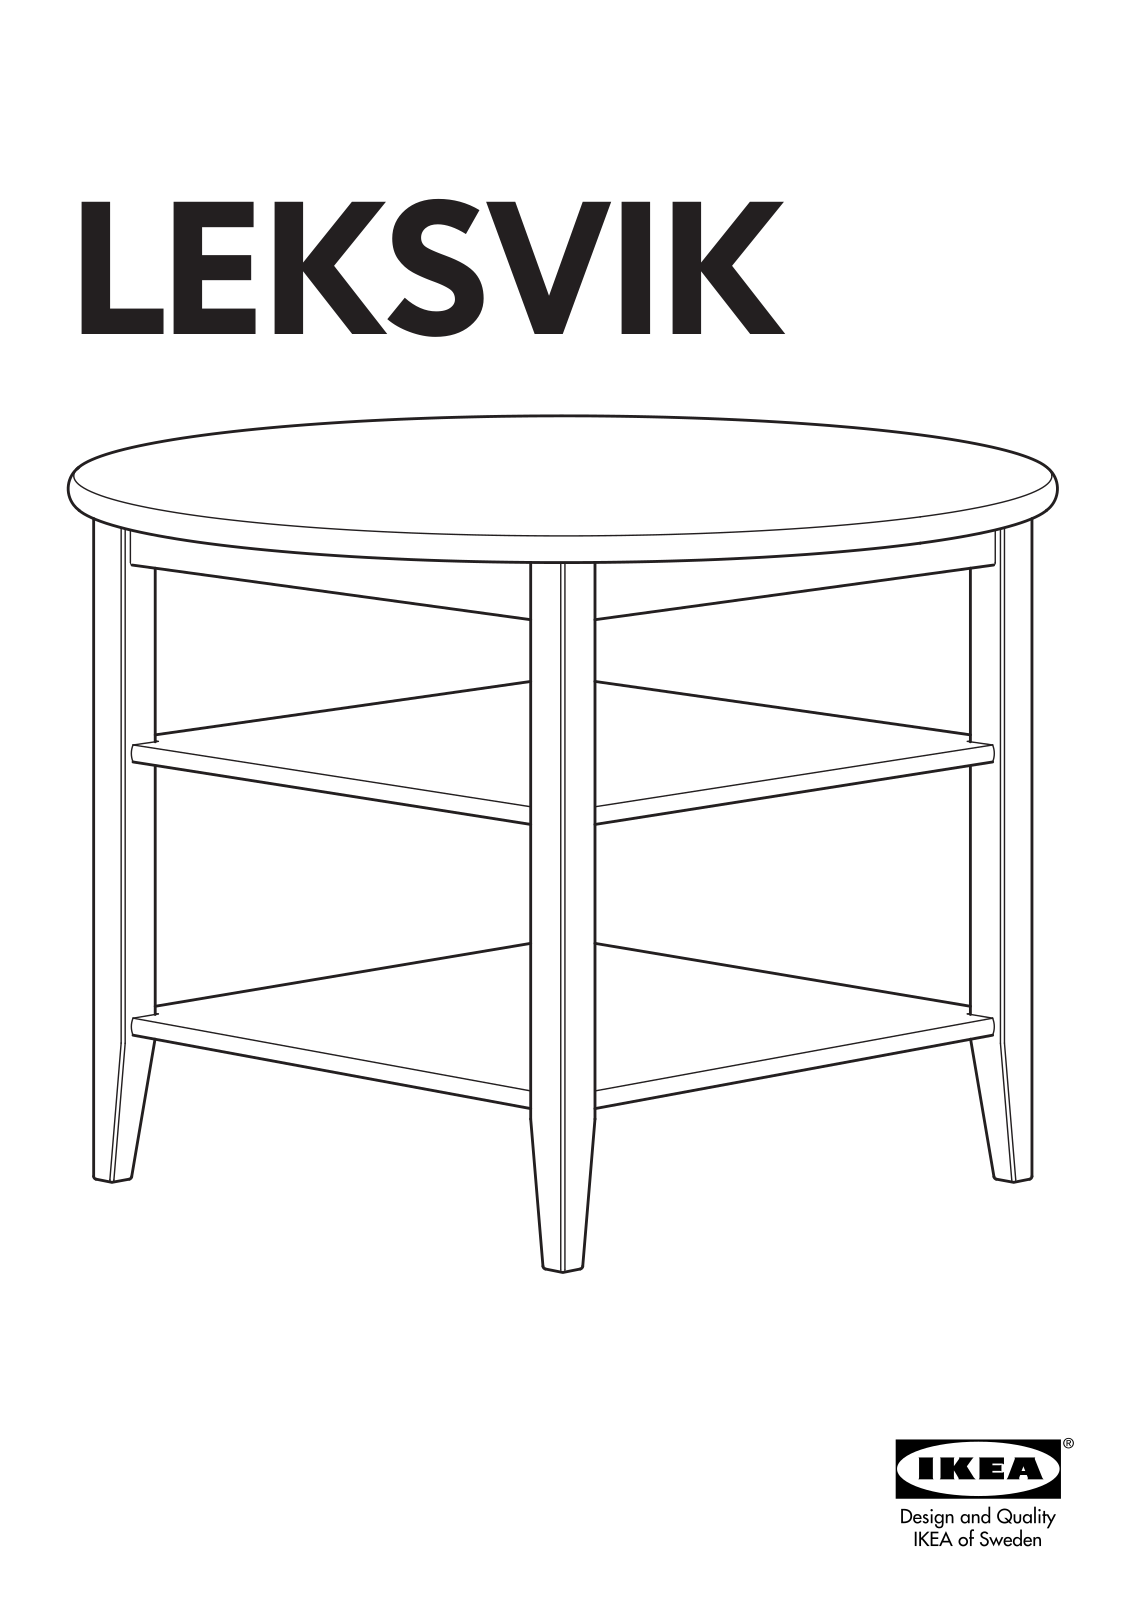 IKEA LEKSVIK CHILDS TABLE Assembly Instruction